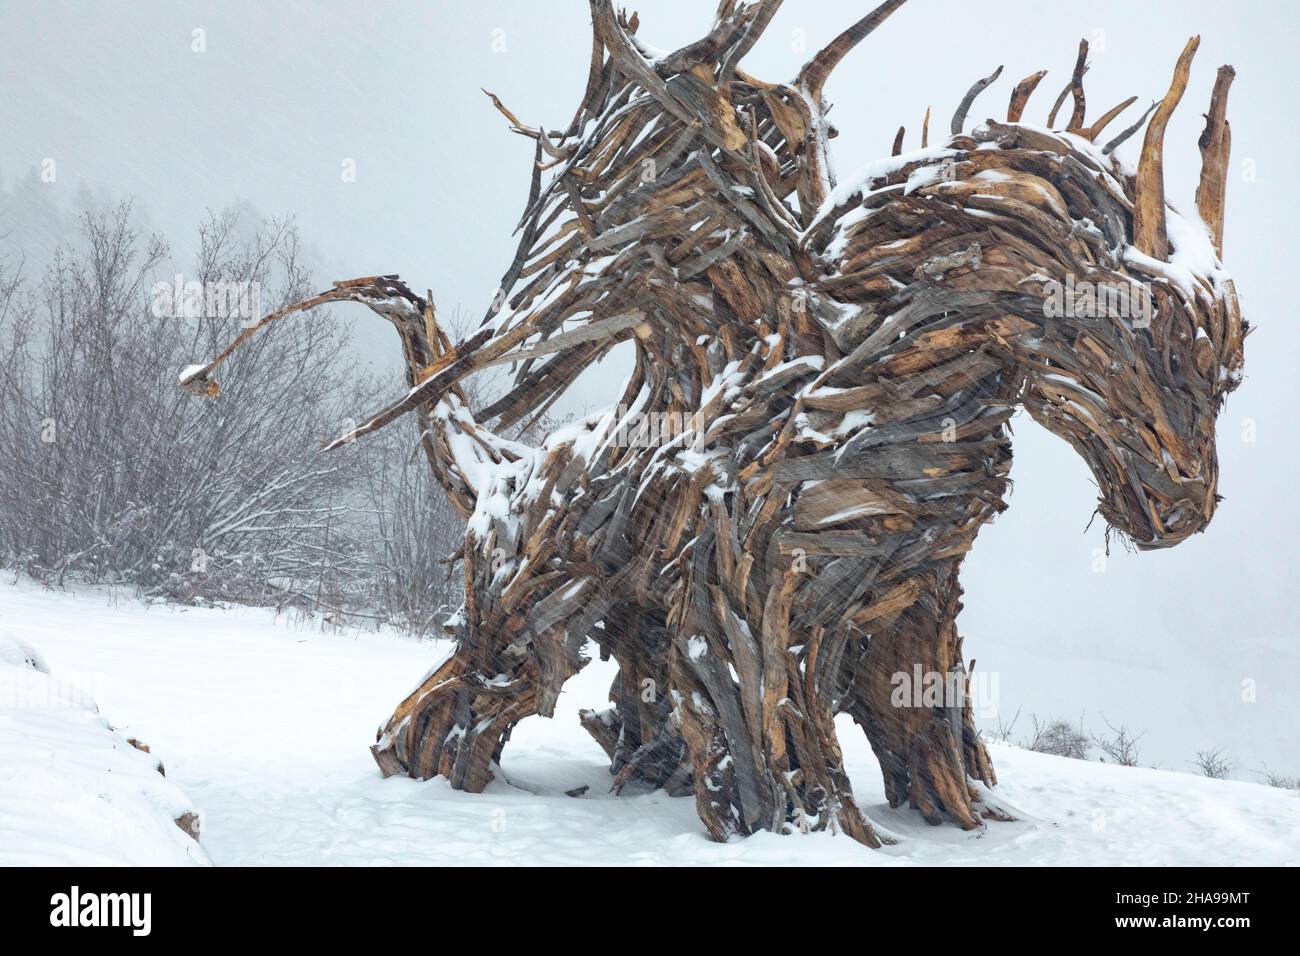 Drago Vaia en Lavarone; el dragón de madera más grande de Europa en Lavarone, Trentino Alto Adige. Foto de stock